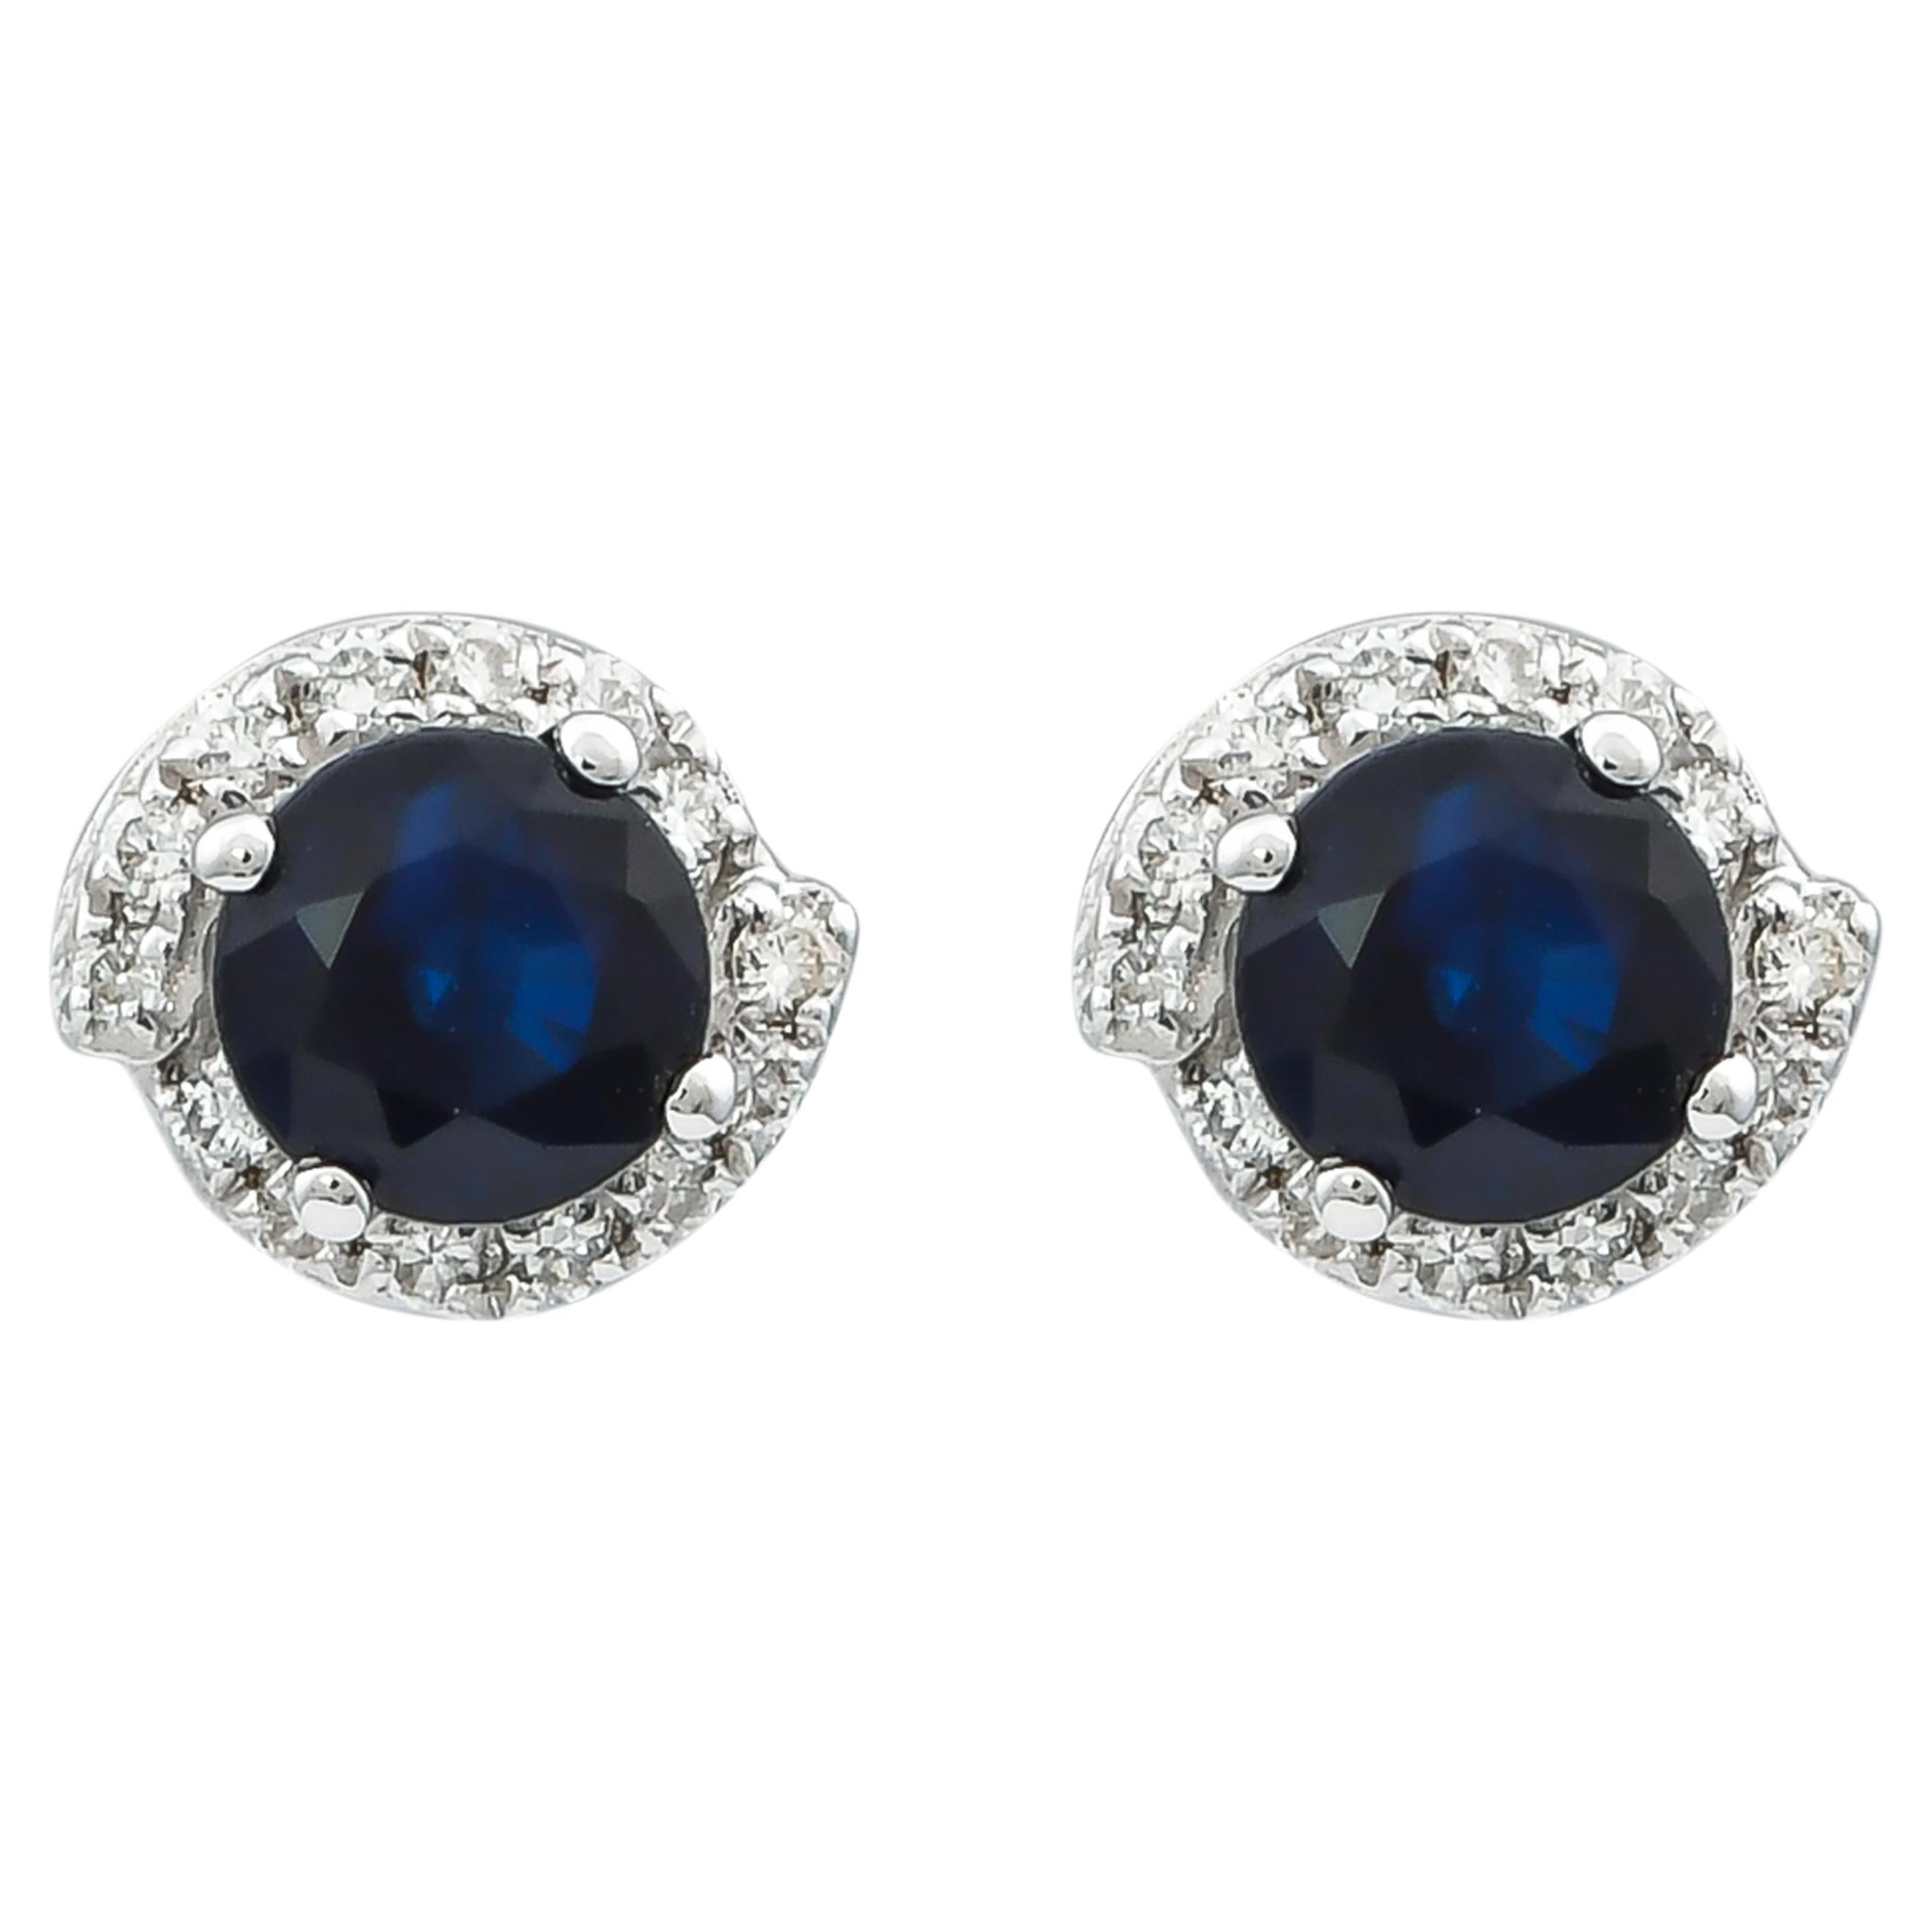 Boucles d'oreilles en or blanc 18 carats avec saphir bleu de 1,0 carat et diamants